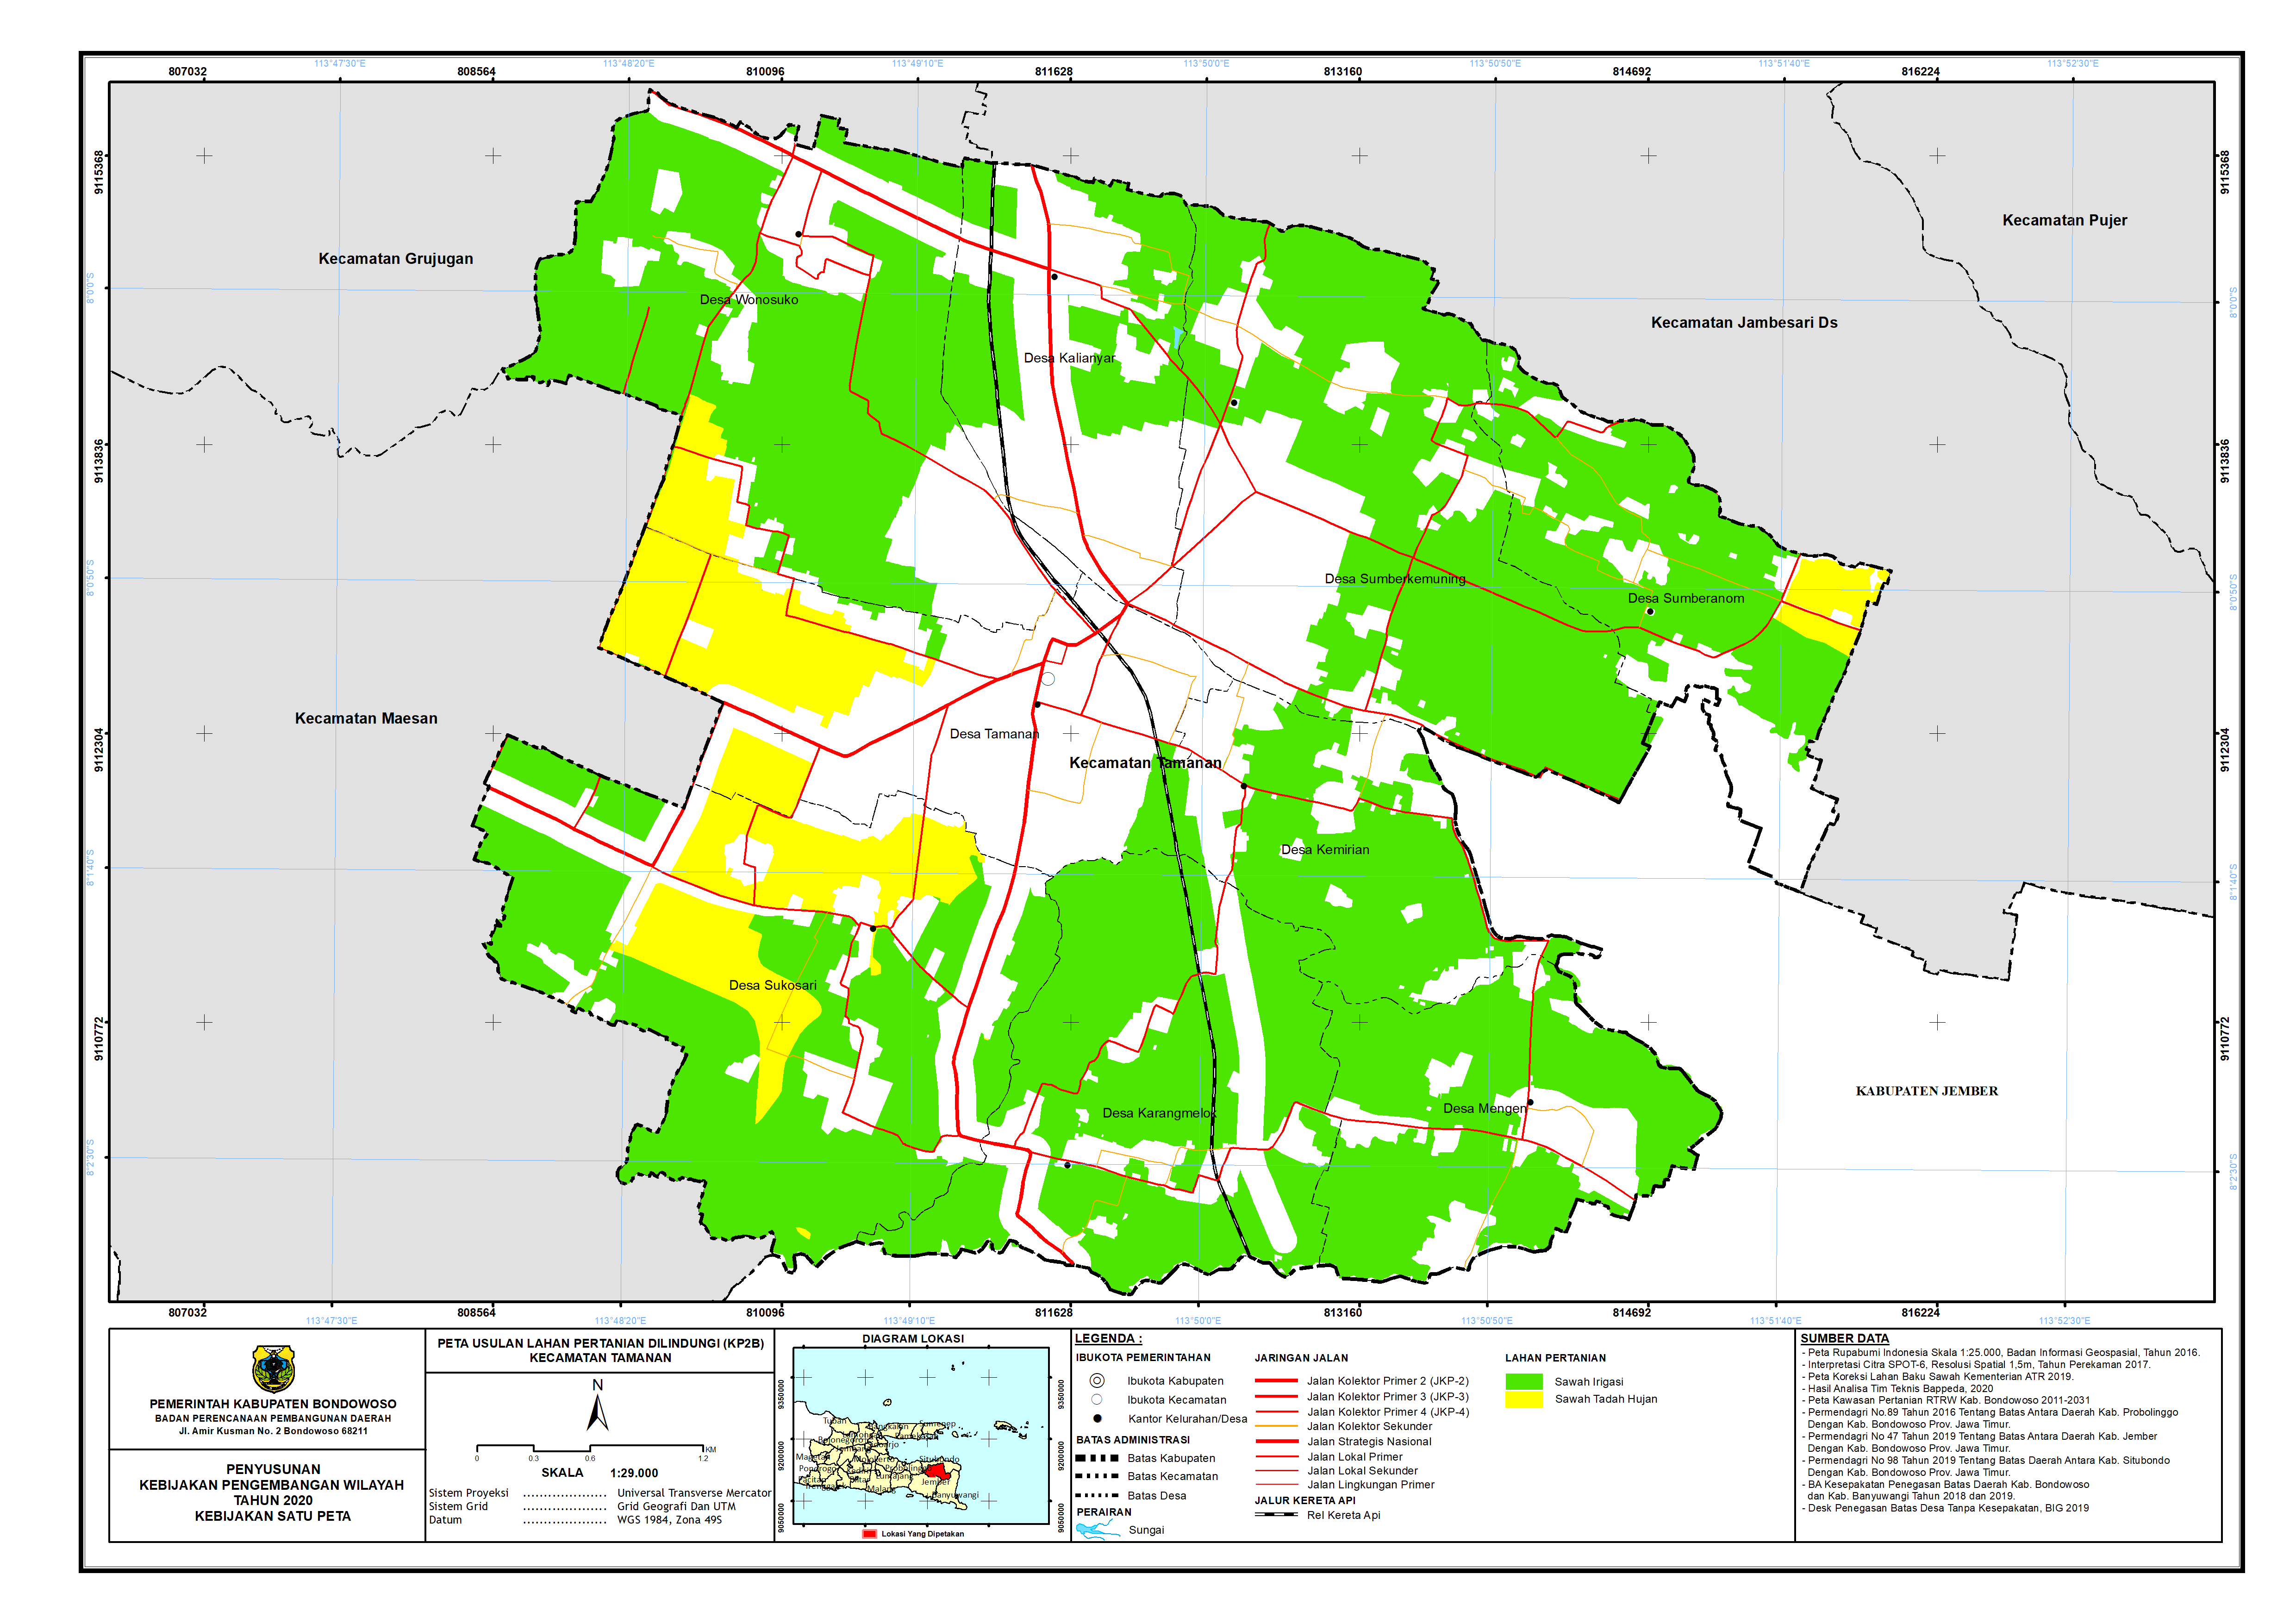 Peta Usulan Lahan Pertanian  Dilindungi Kecamatan Tamanan.png